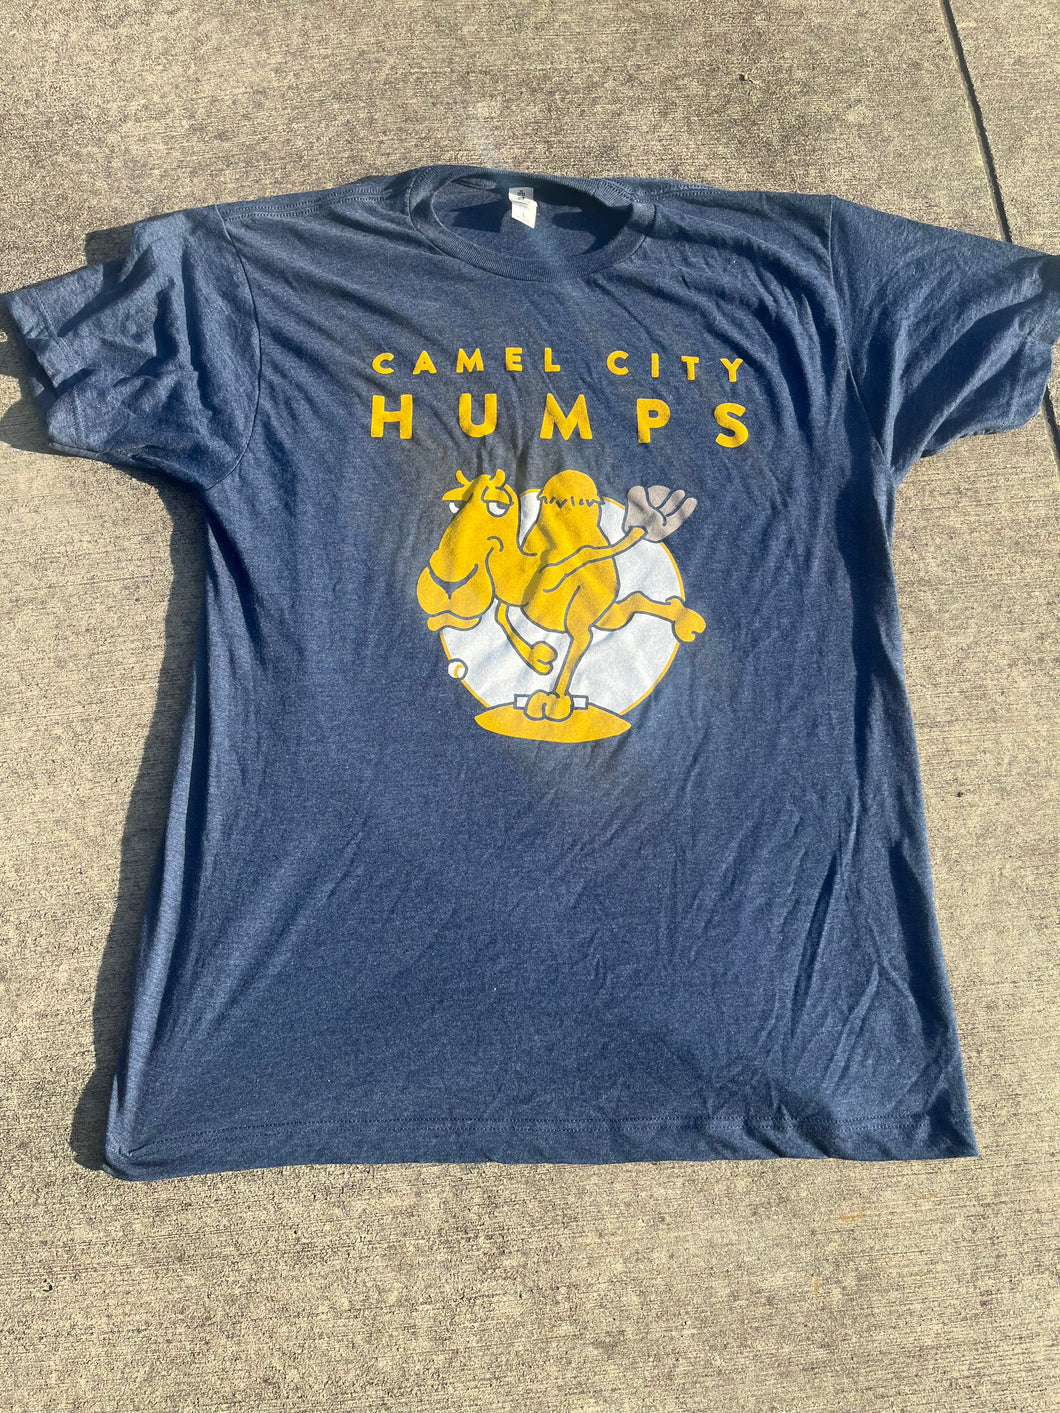 Camel City Humps navy logo tee